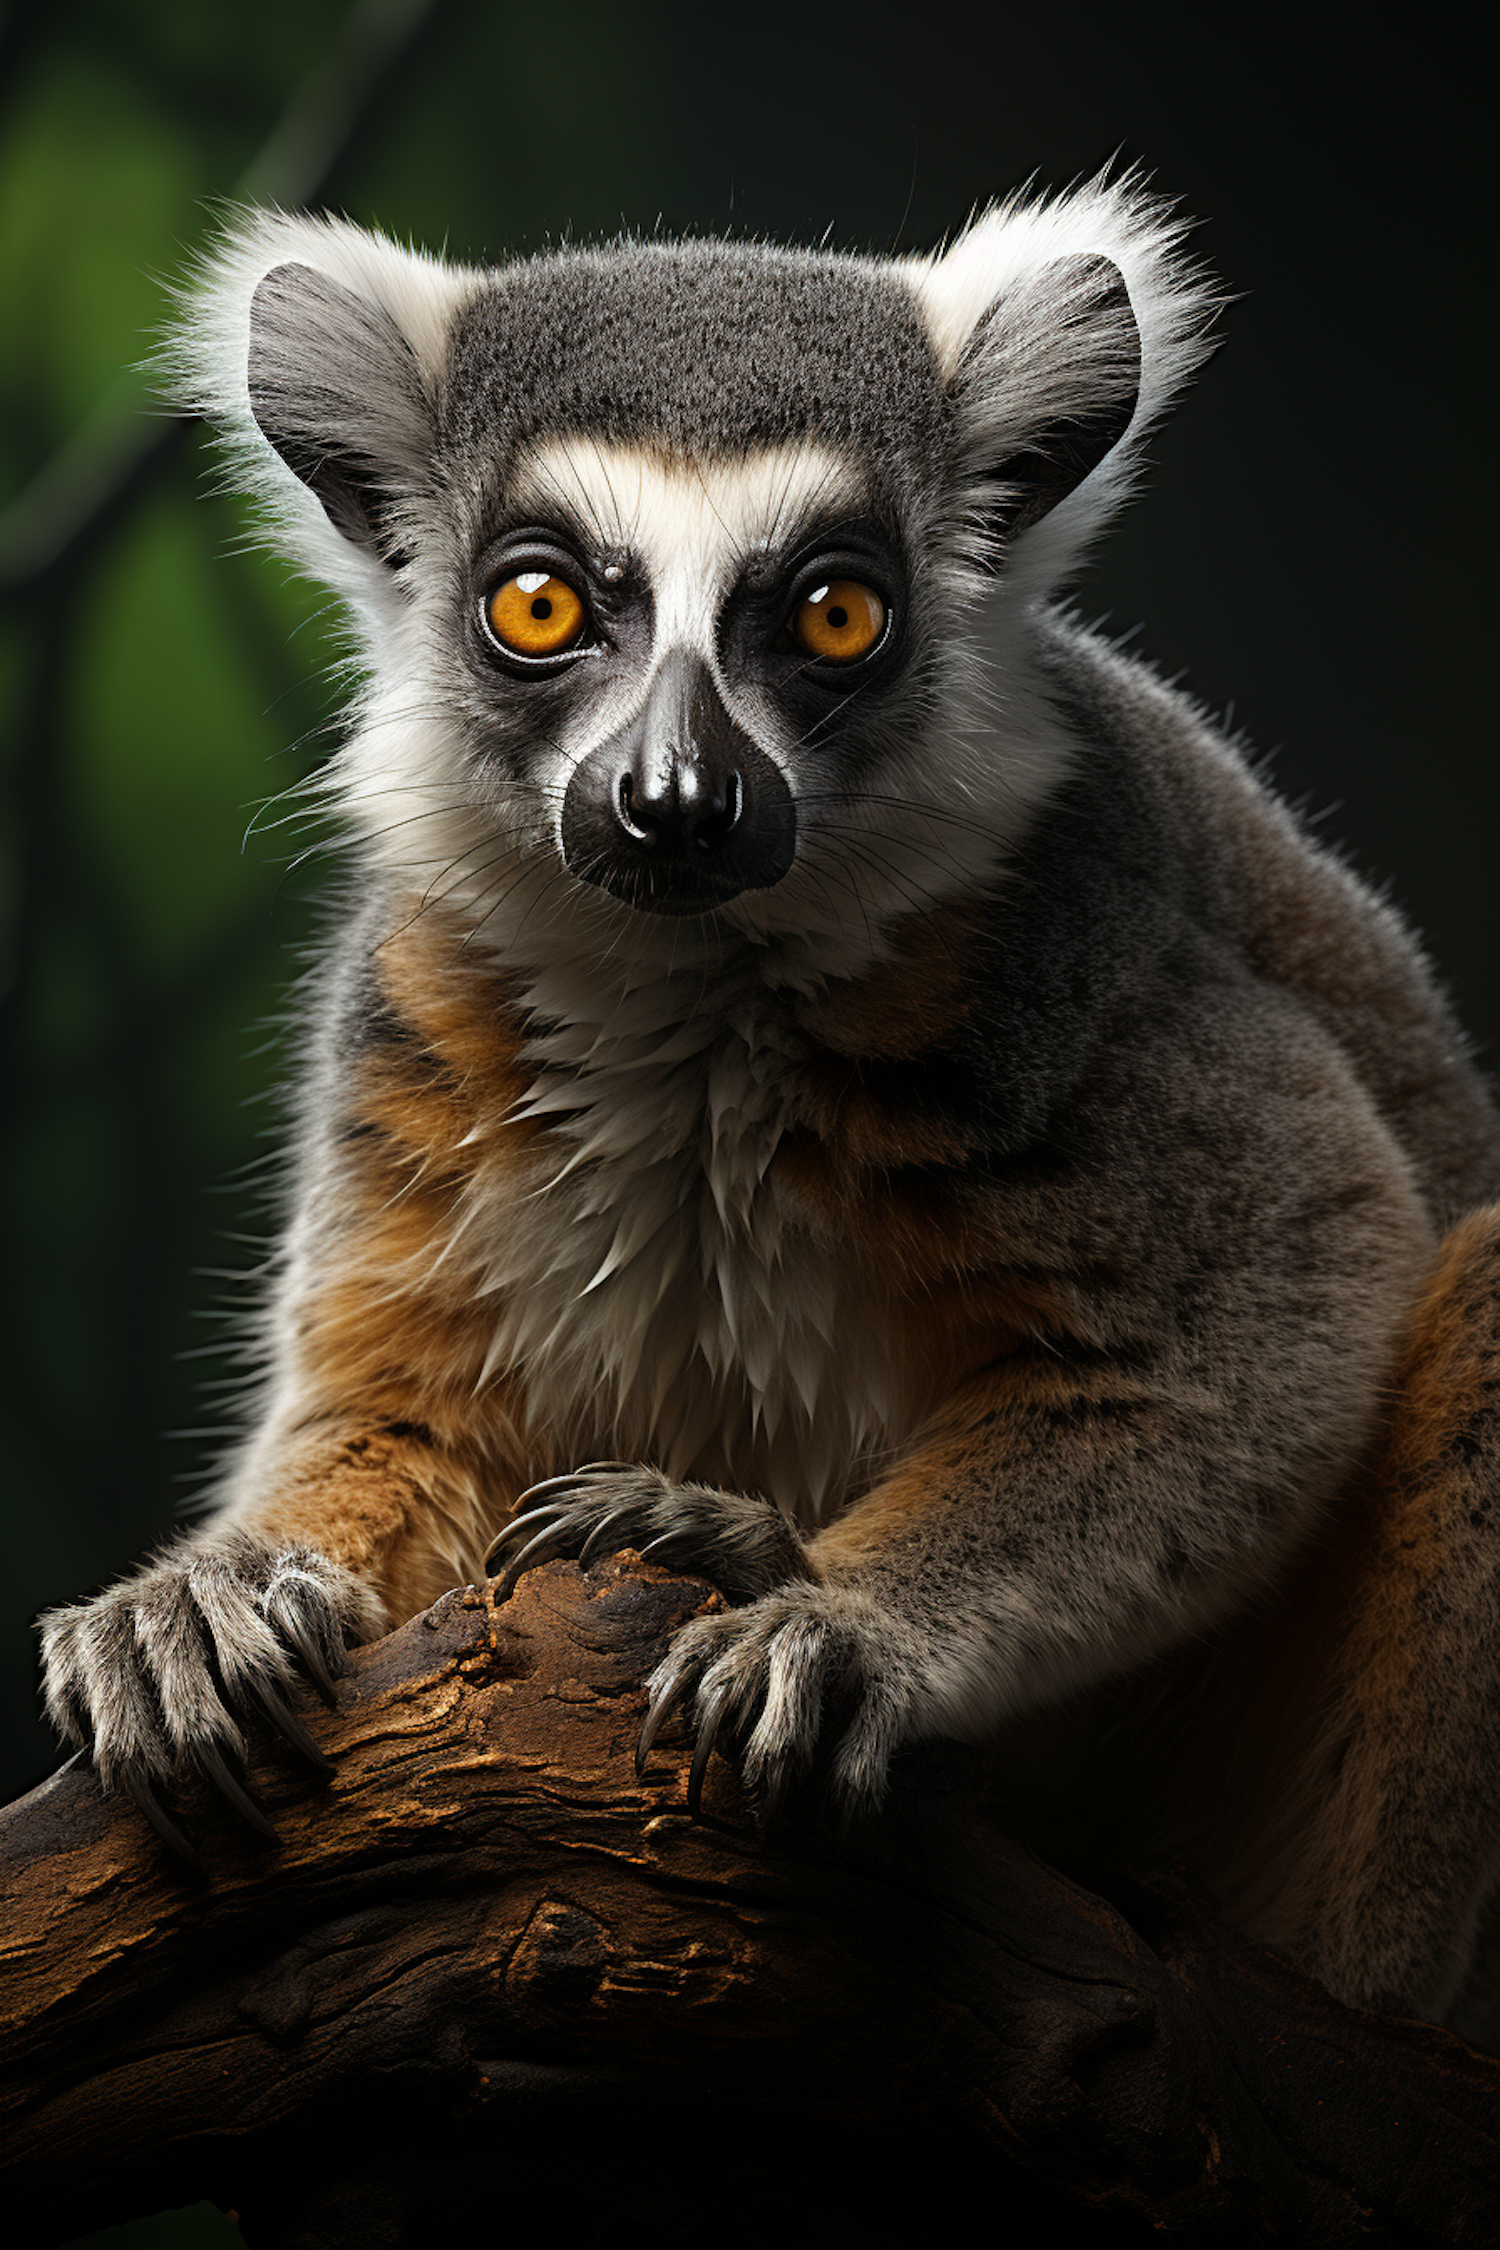 Intense Gaze of the Ring-Tailed Lemur